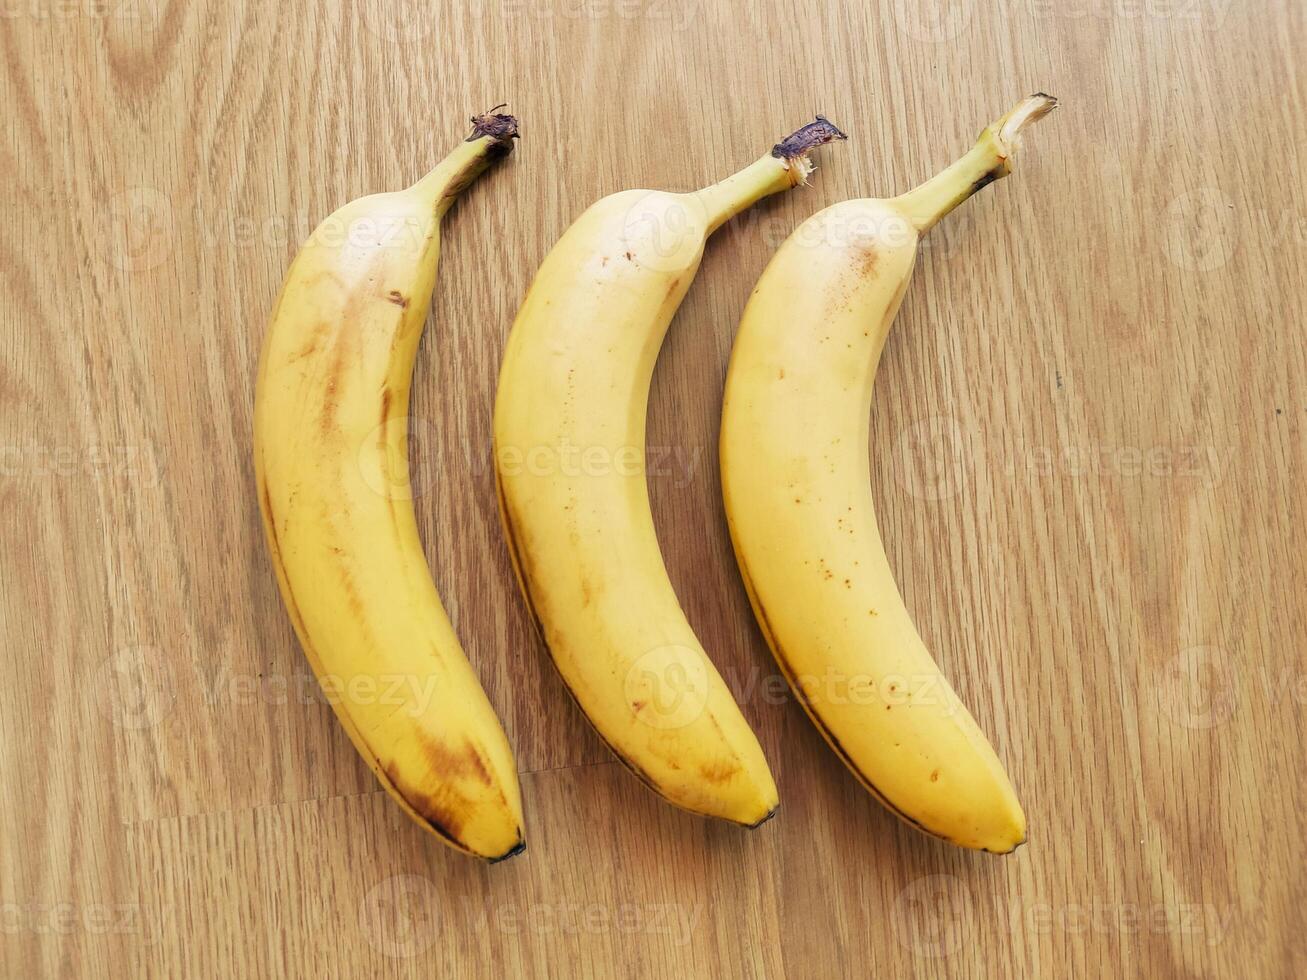 maduro bananas. exótico tropical amarelo fruta. banana símbolo do saúde Cuidado e bem-estar. foto